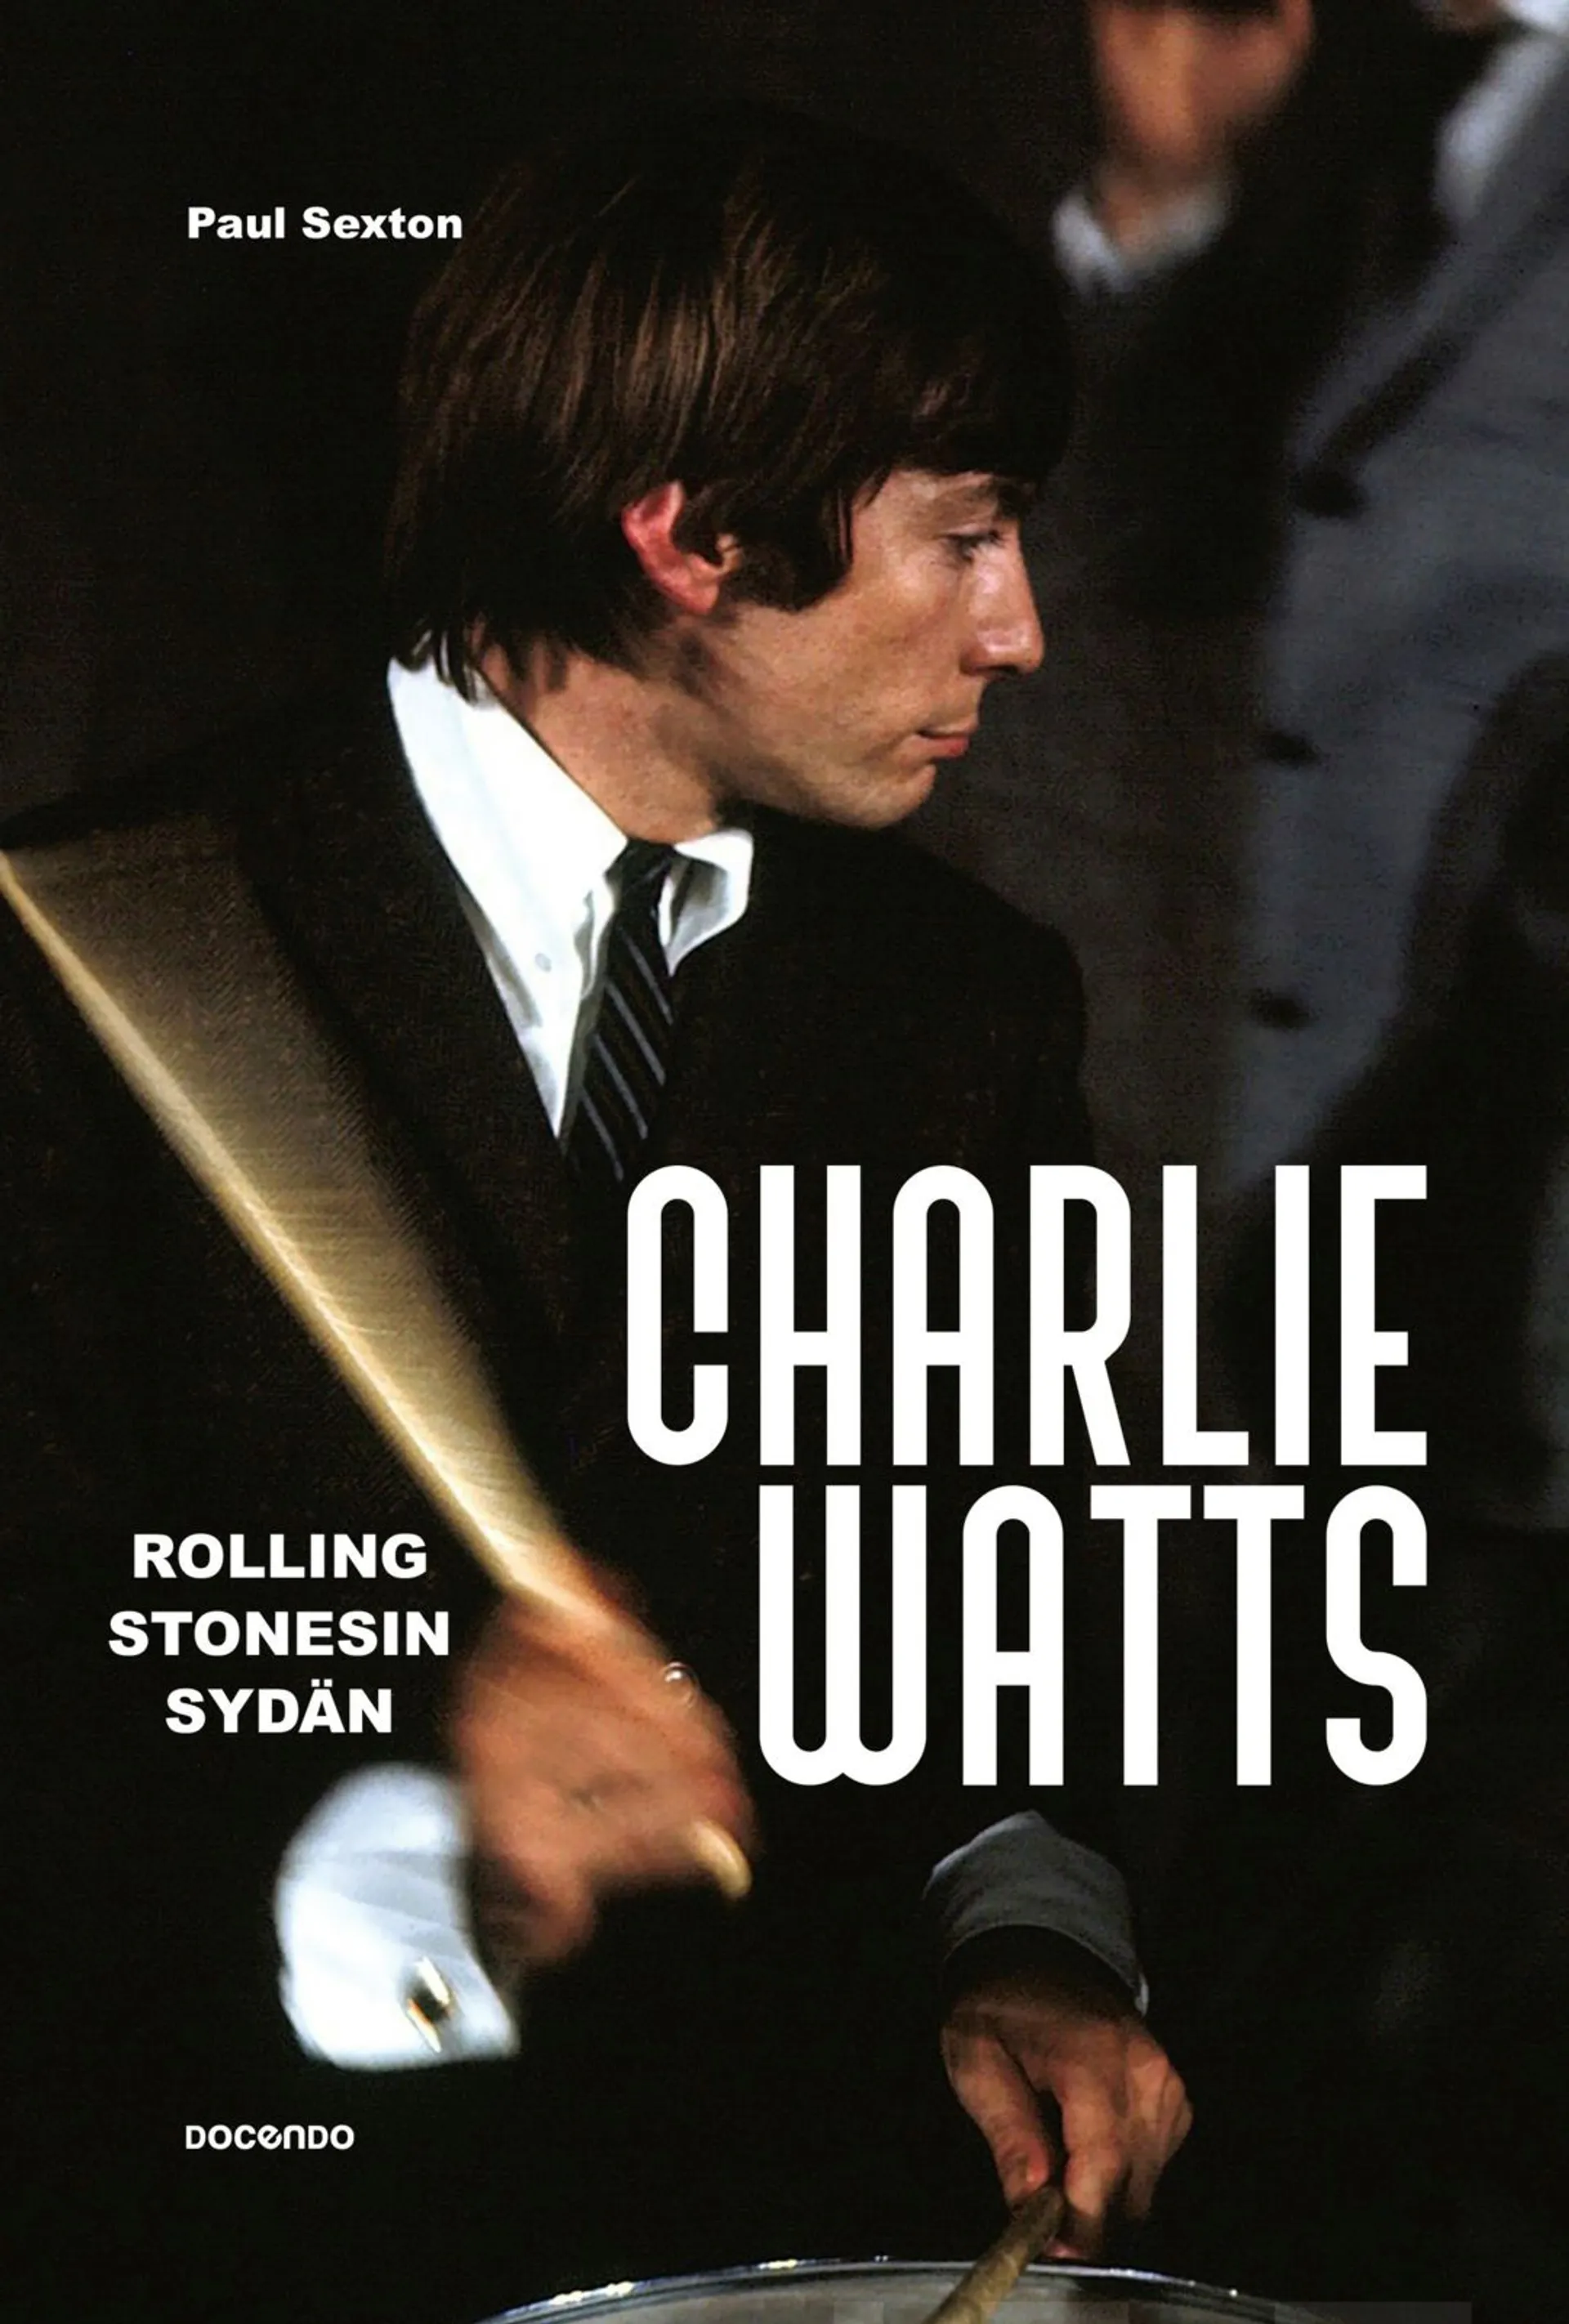 Sexton, Charlie Watts - Rolling Stonesin sydän